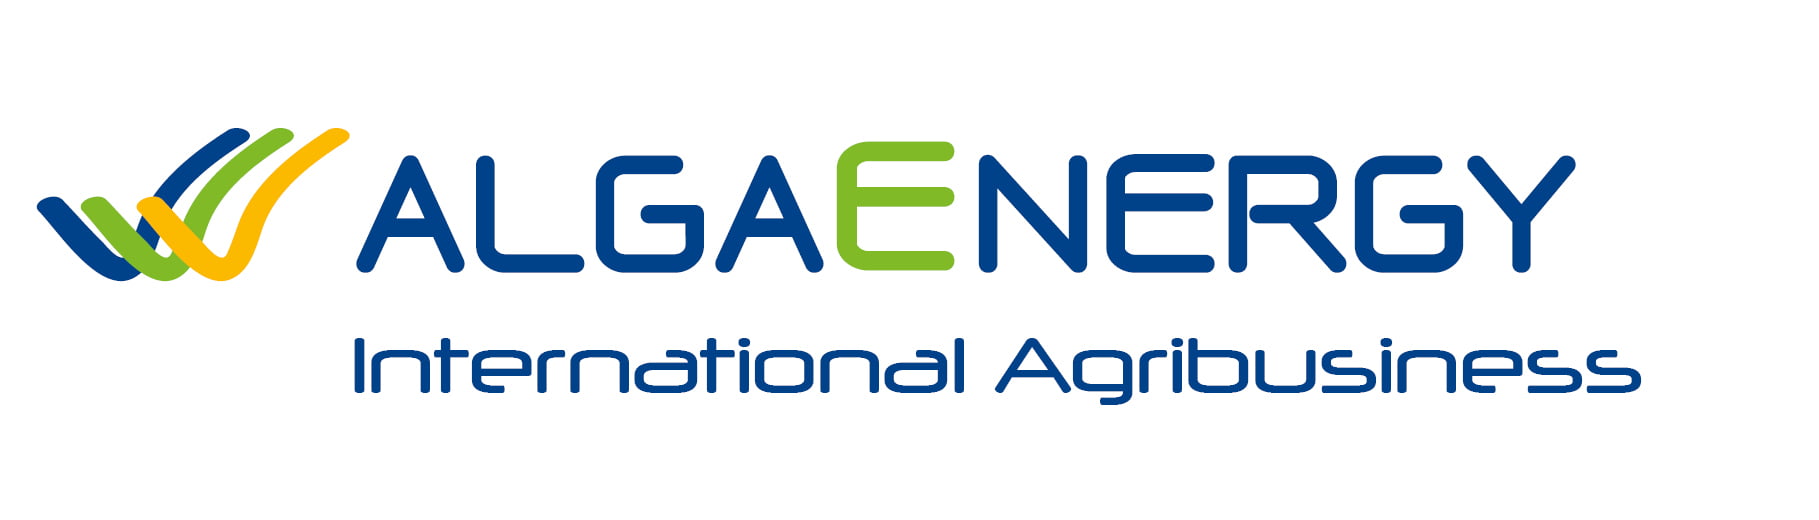 AlgaEnergy International AgriBusiness